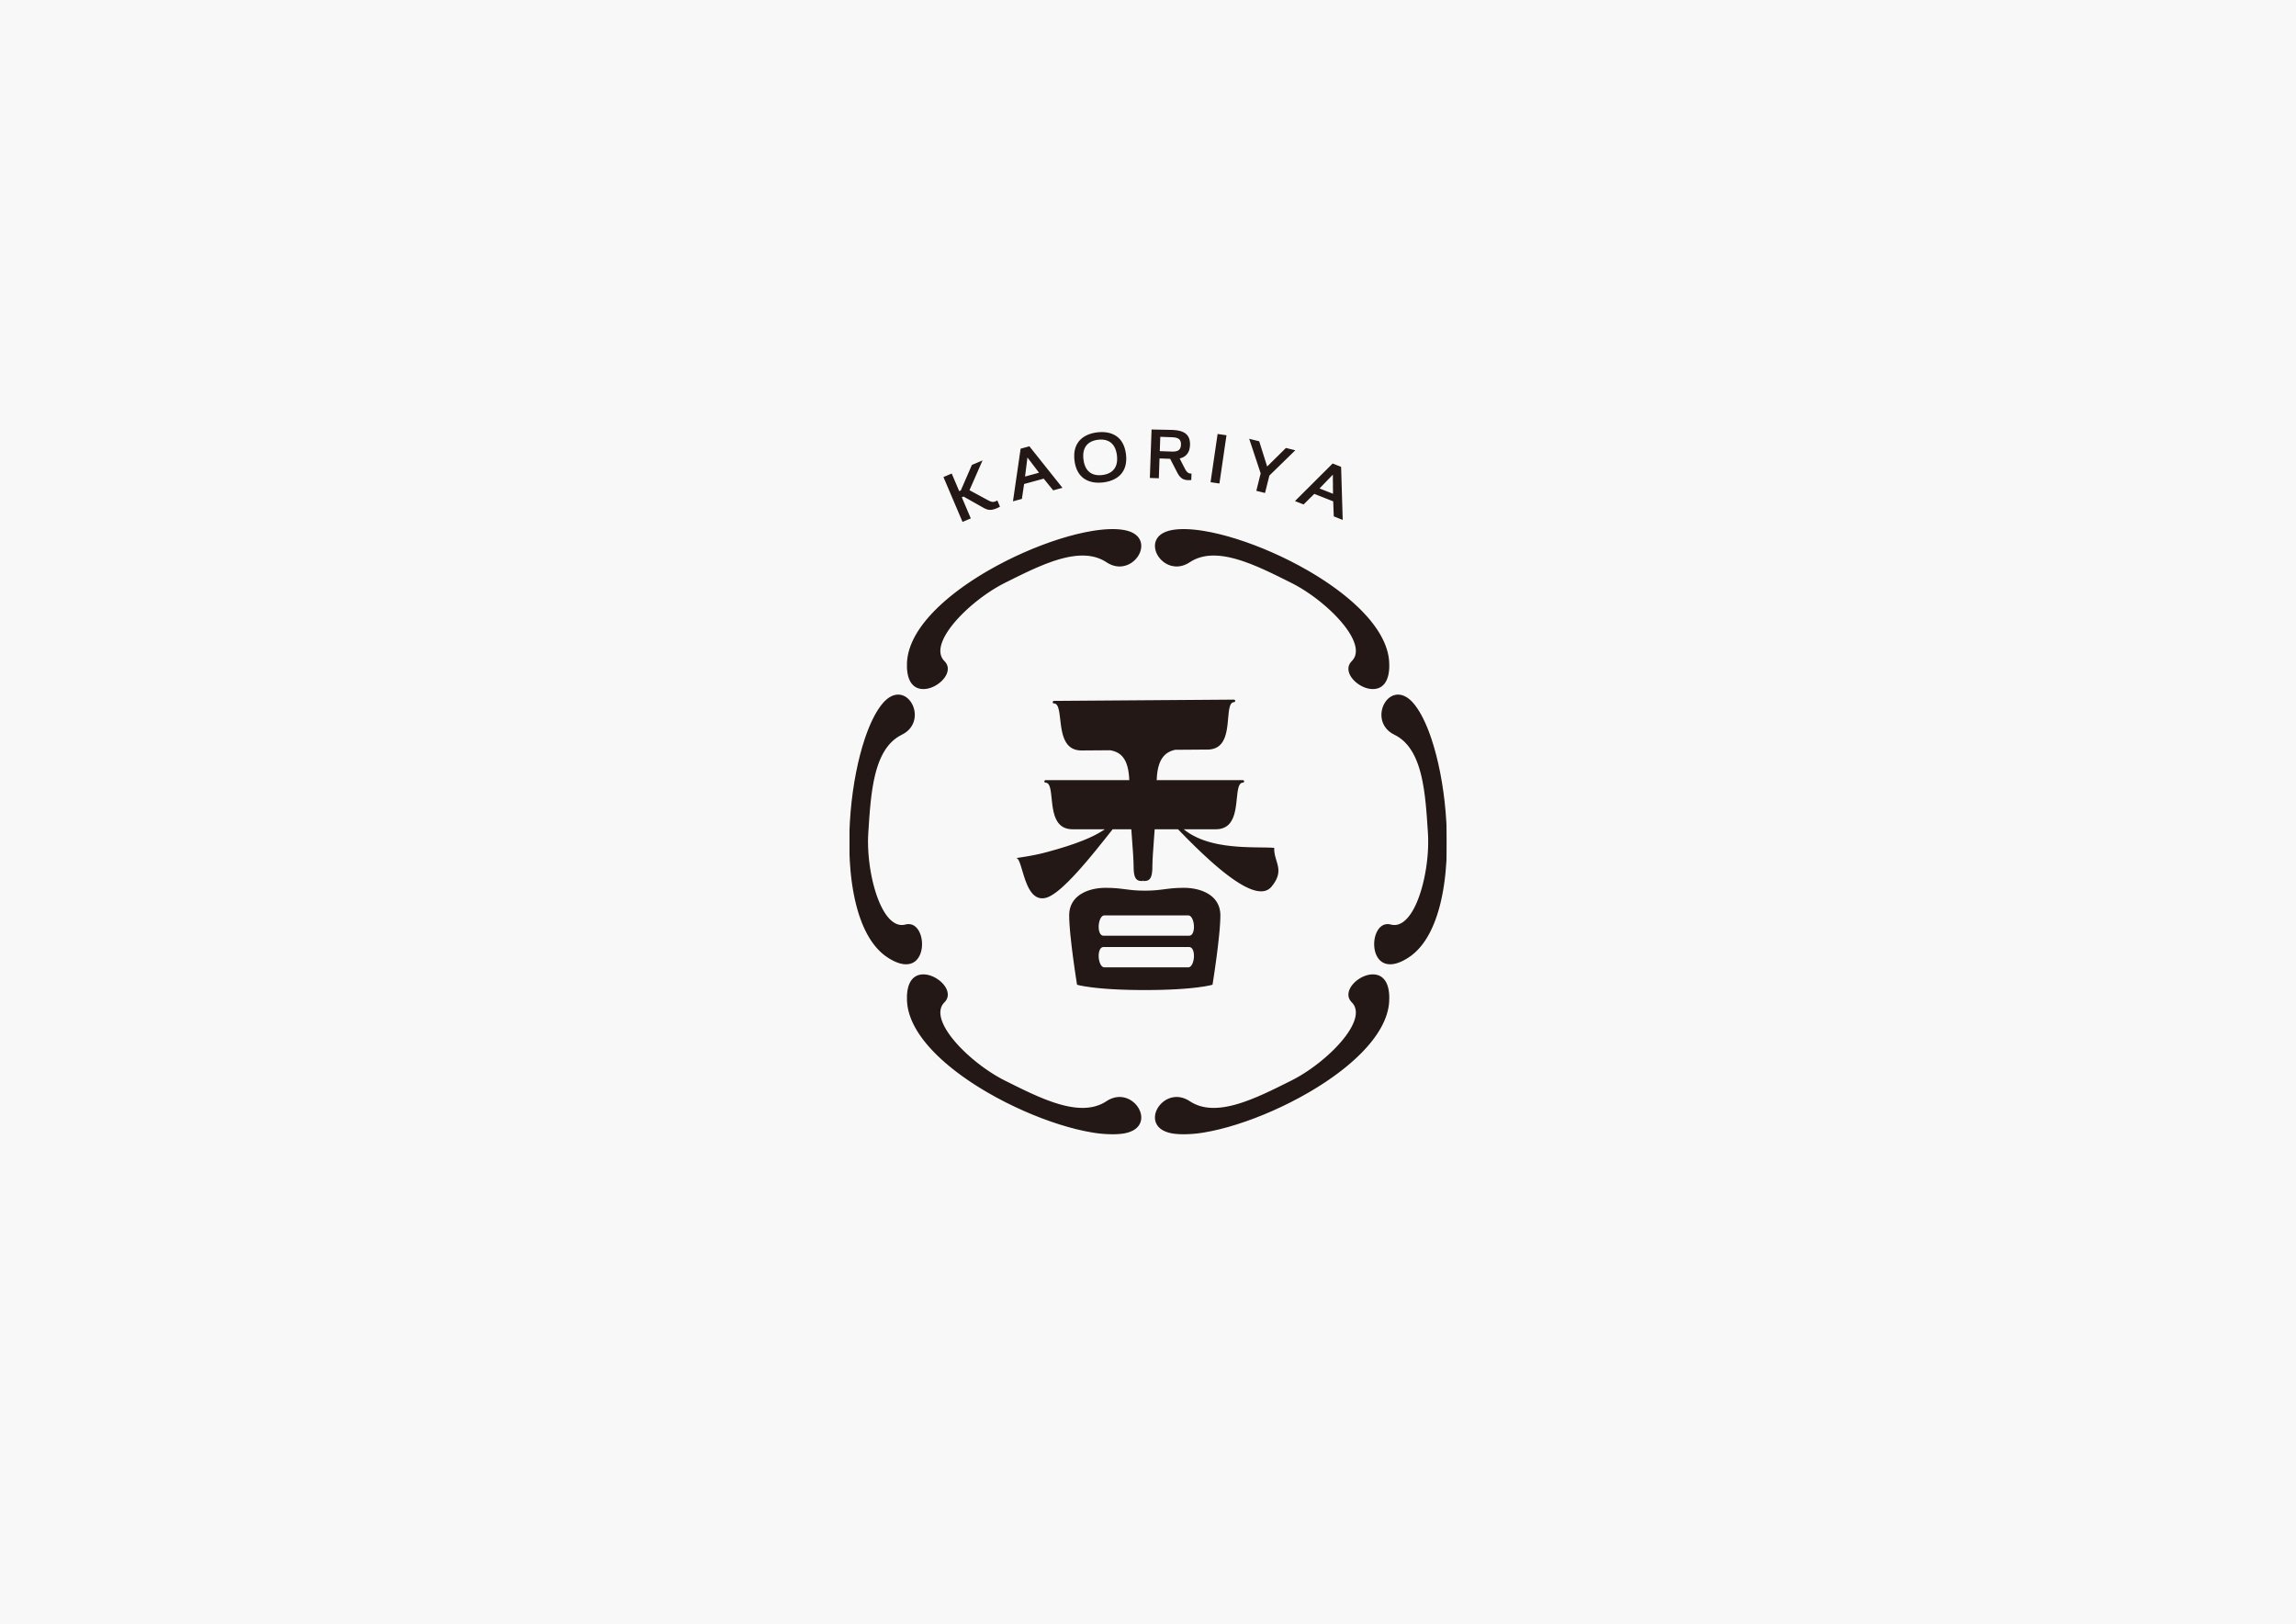 kaoriya_logo_4.jpg